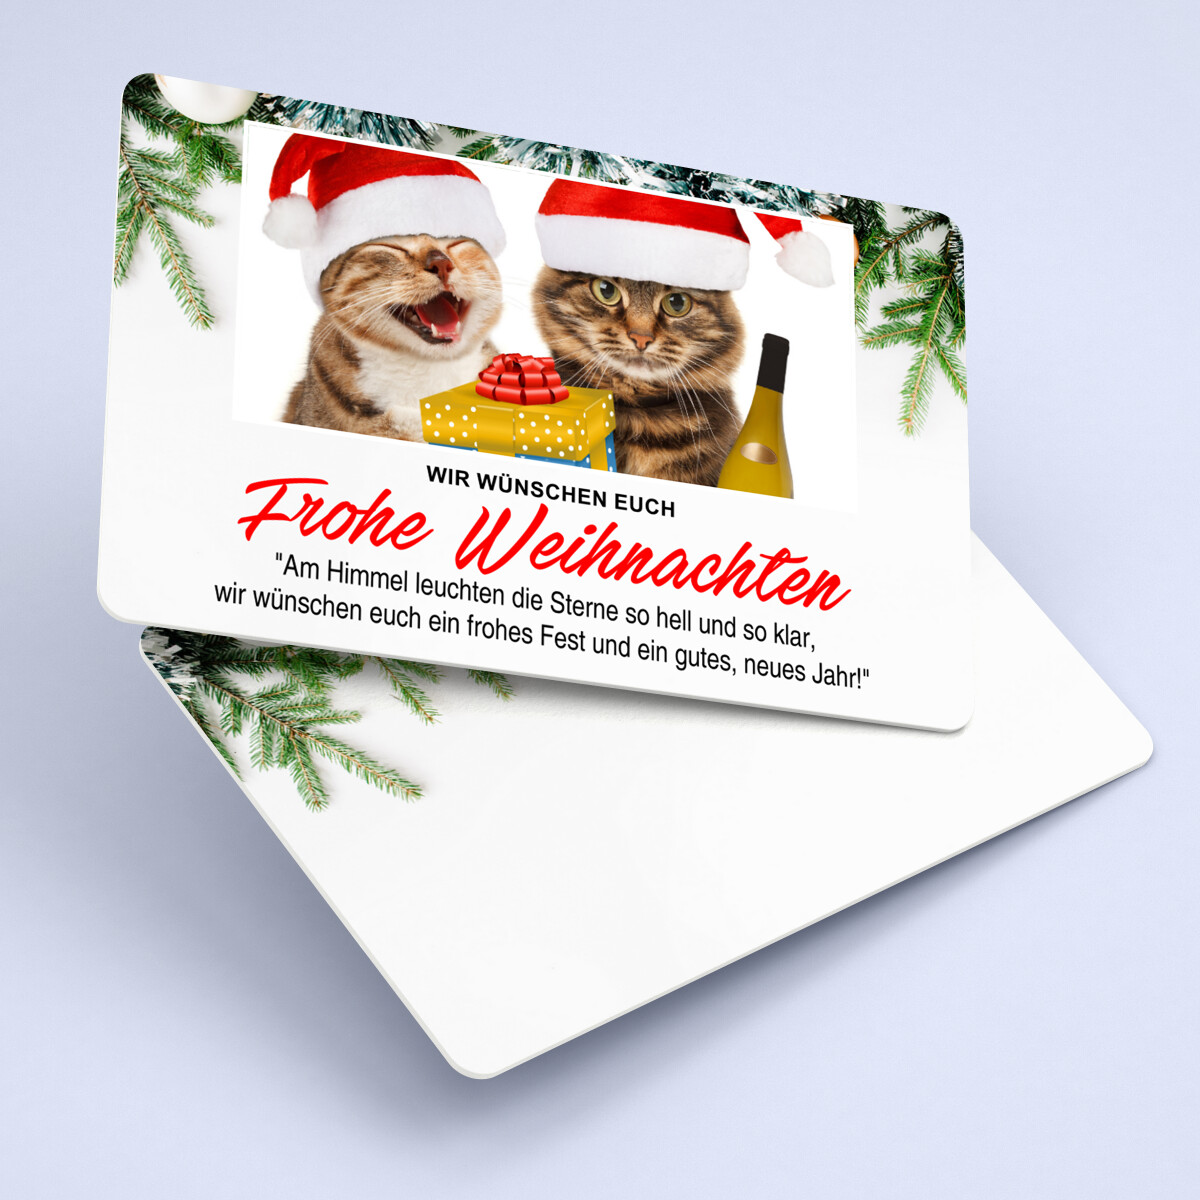 Personalisierbare Weihnachtskarten mit Katzenmotiv und persönlichem Text auf eine Plastikkarte im Kreditkartenformat drucken lassen